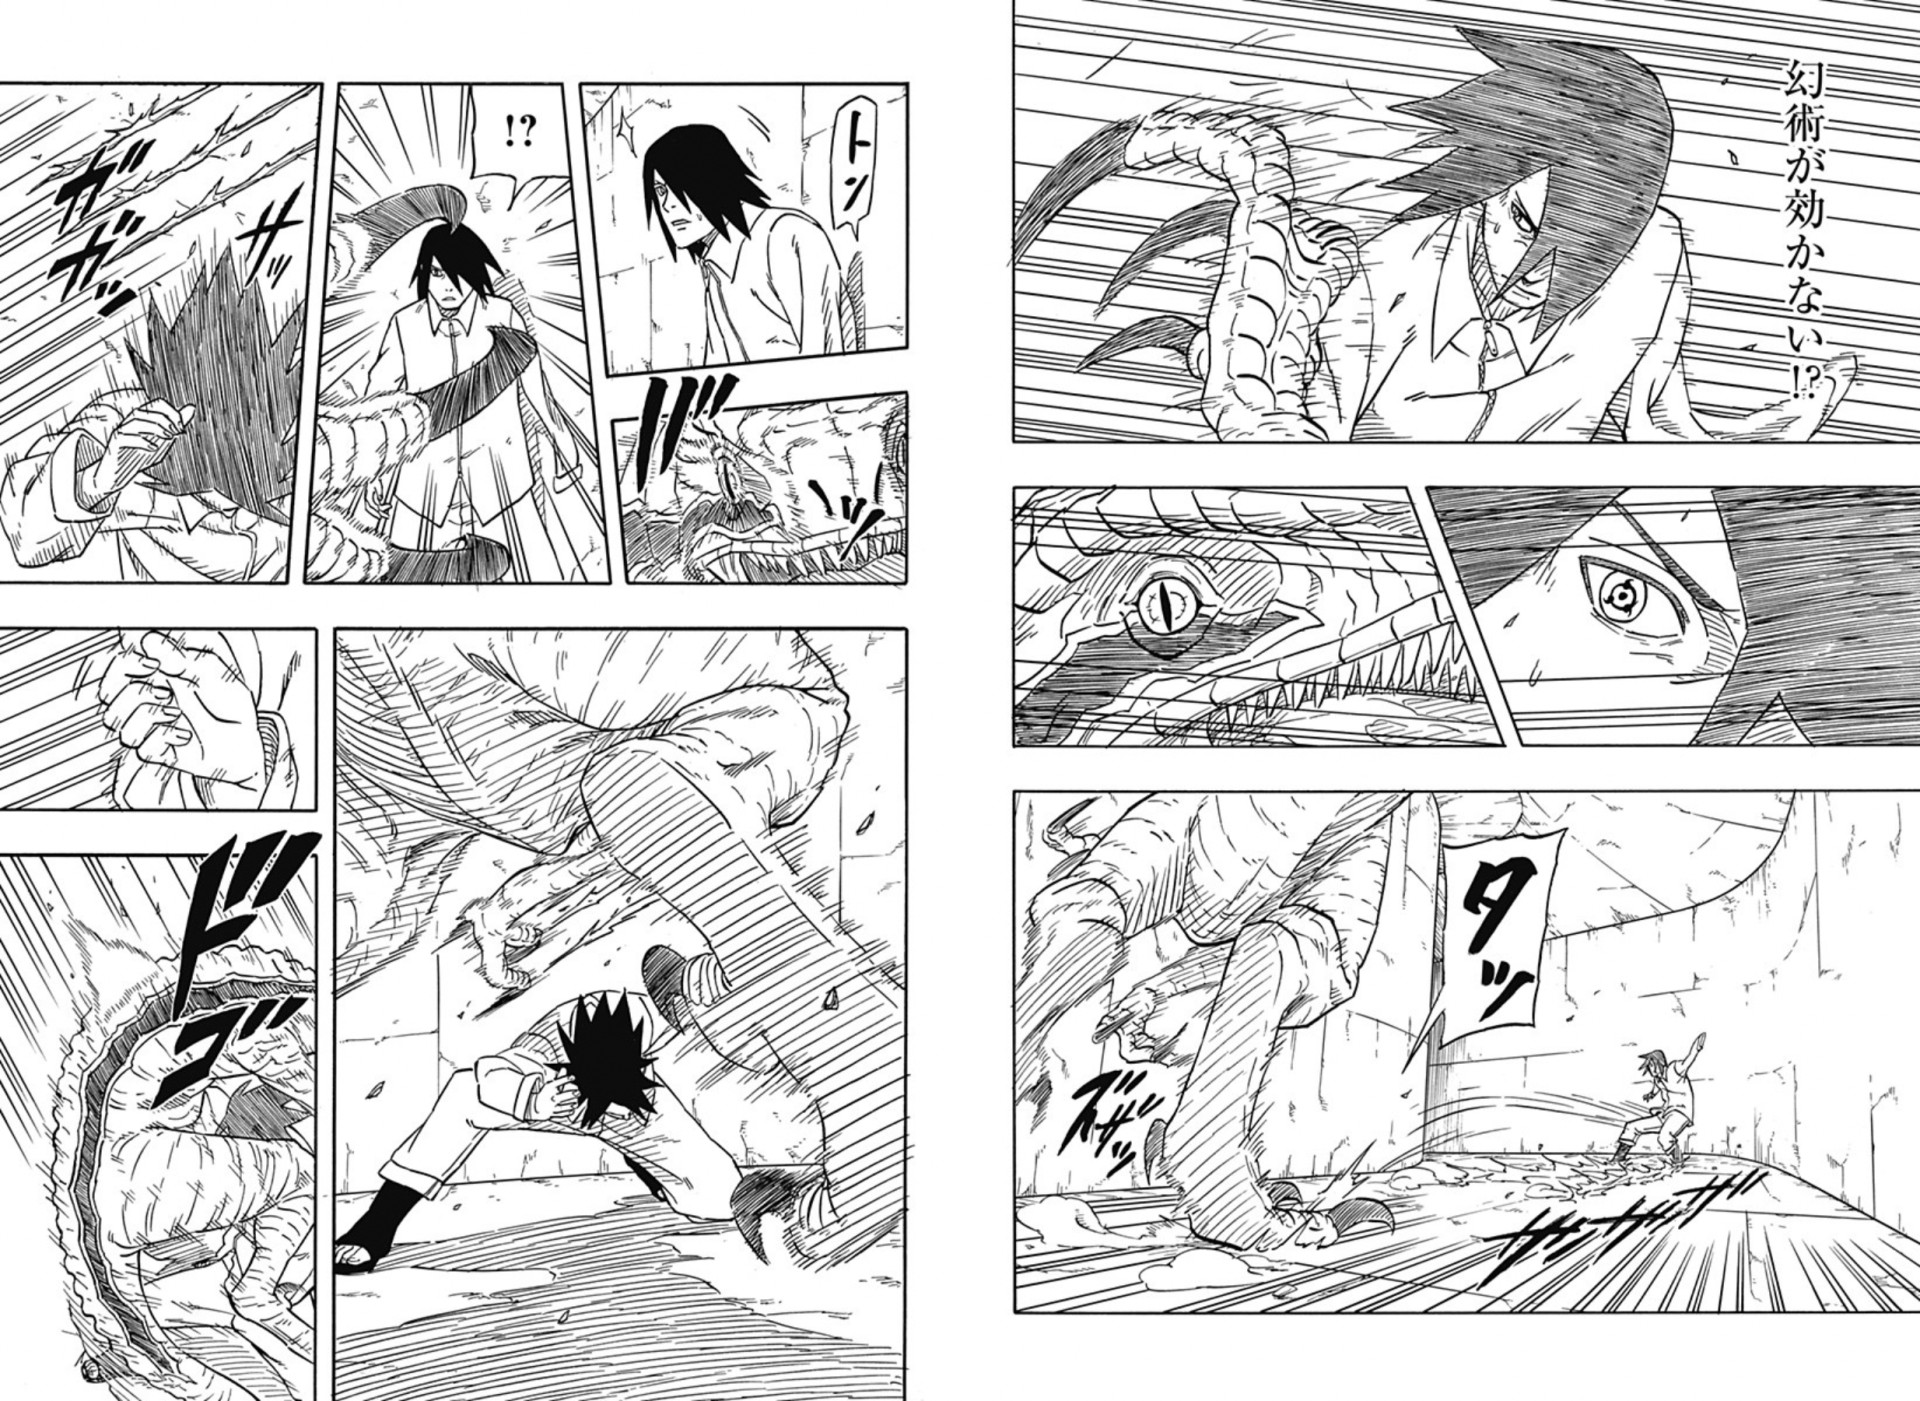 Shingo Kimura, Artist of Sasuke's Story, Reveals the Impact Being